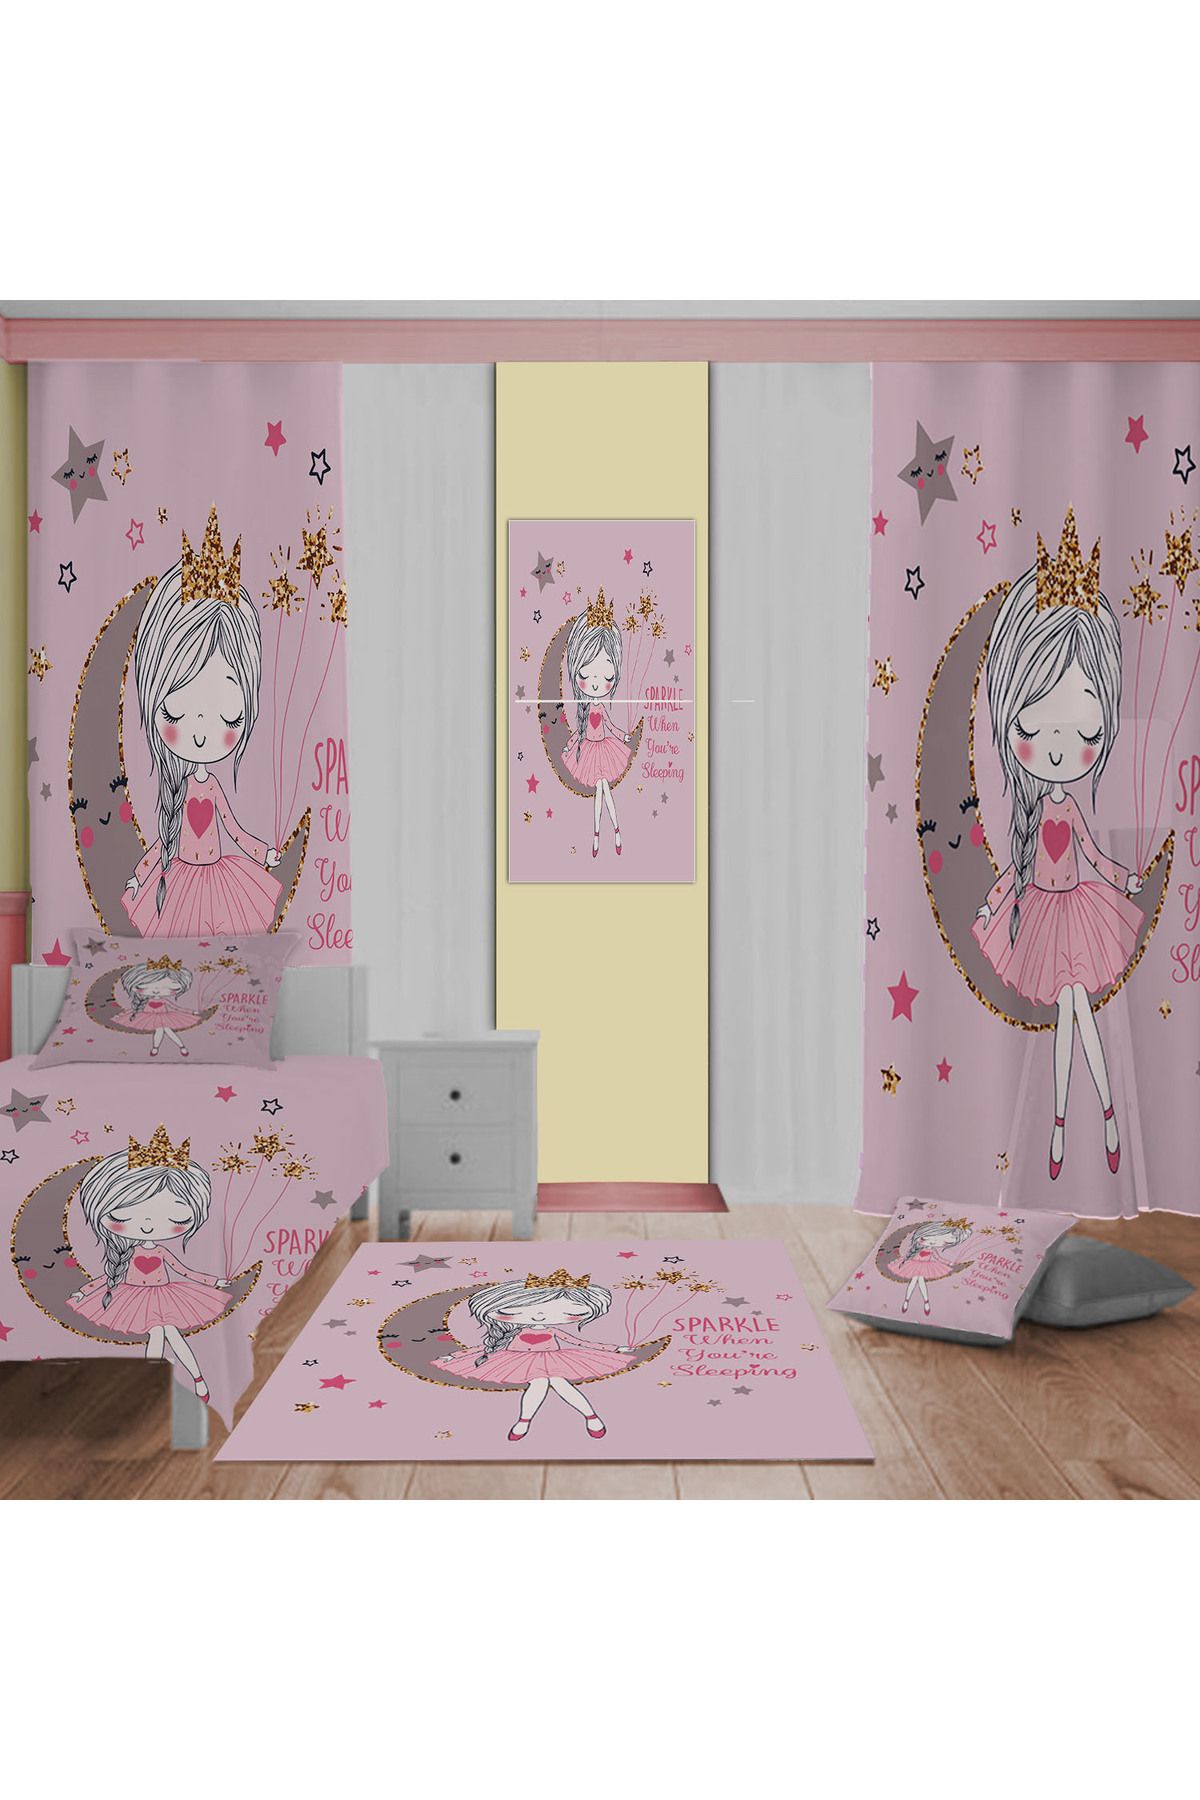 Evan Home Prenses Kız Desenli Çocuk Odası Takım Perde (iki Kanat),Yatak Örtüsü,Yastık,Kırlent ,Halı,Tablo